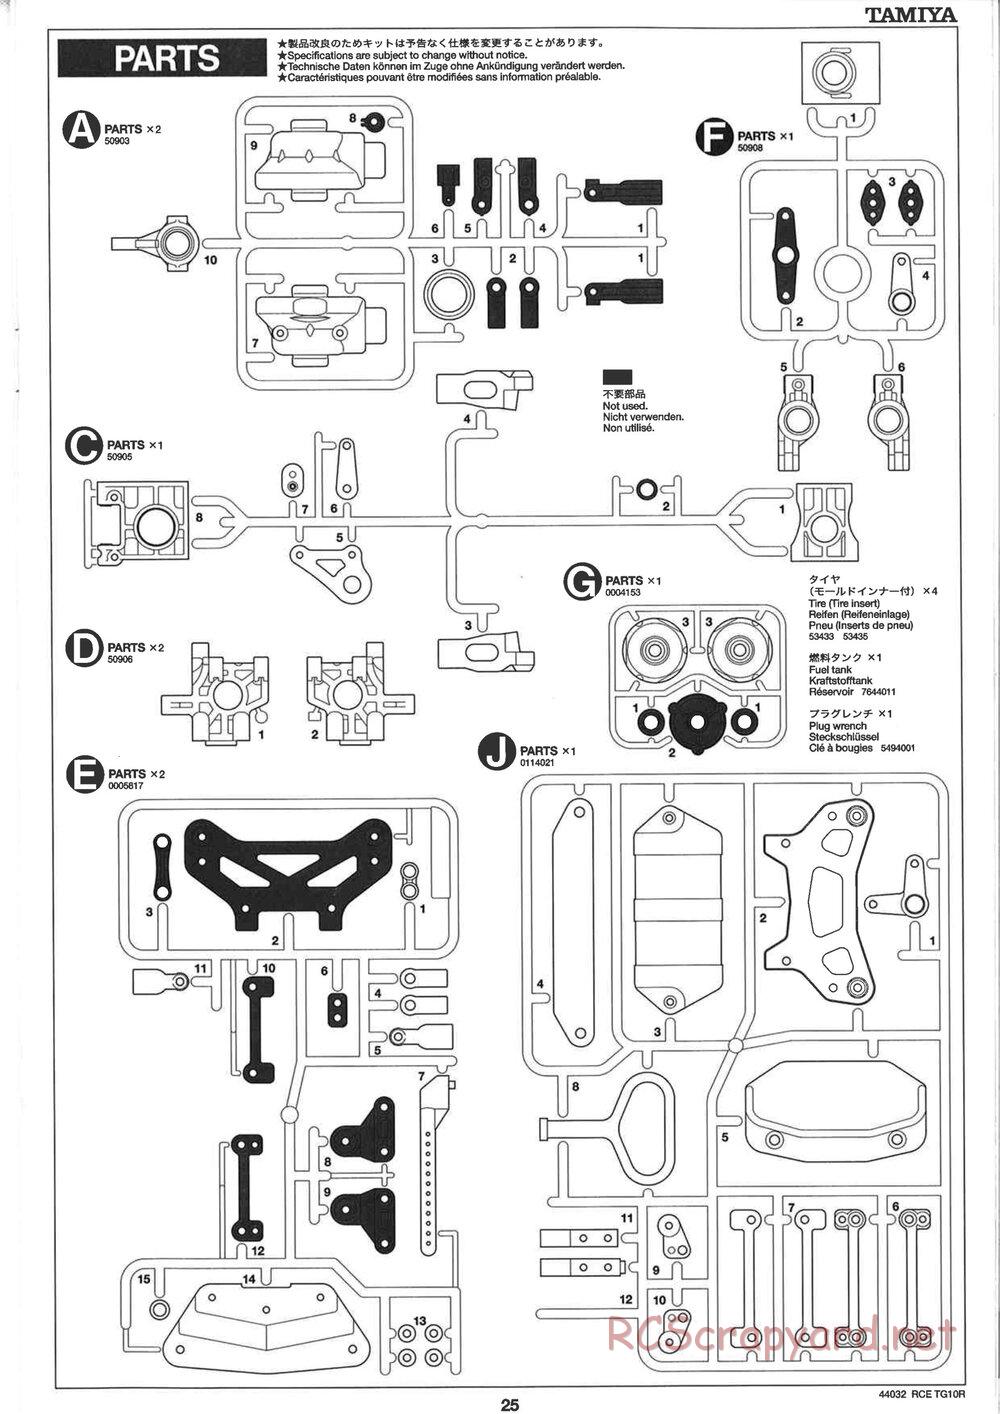 Tamiya - TG10R Chassis - Manual - Page 25